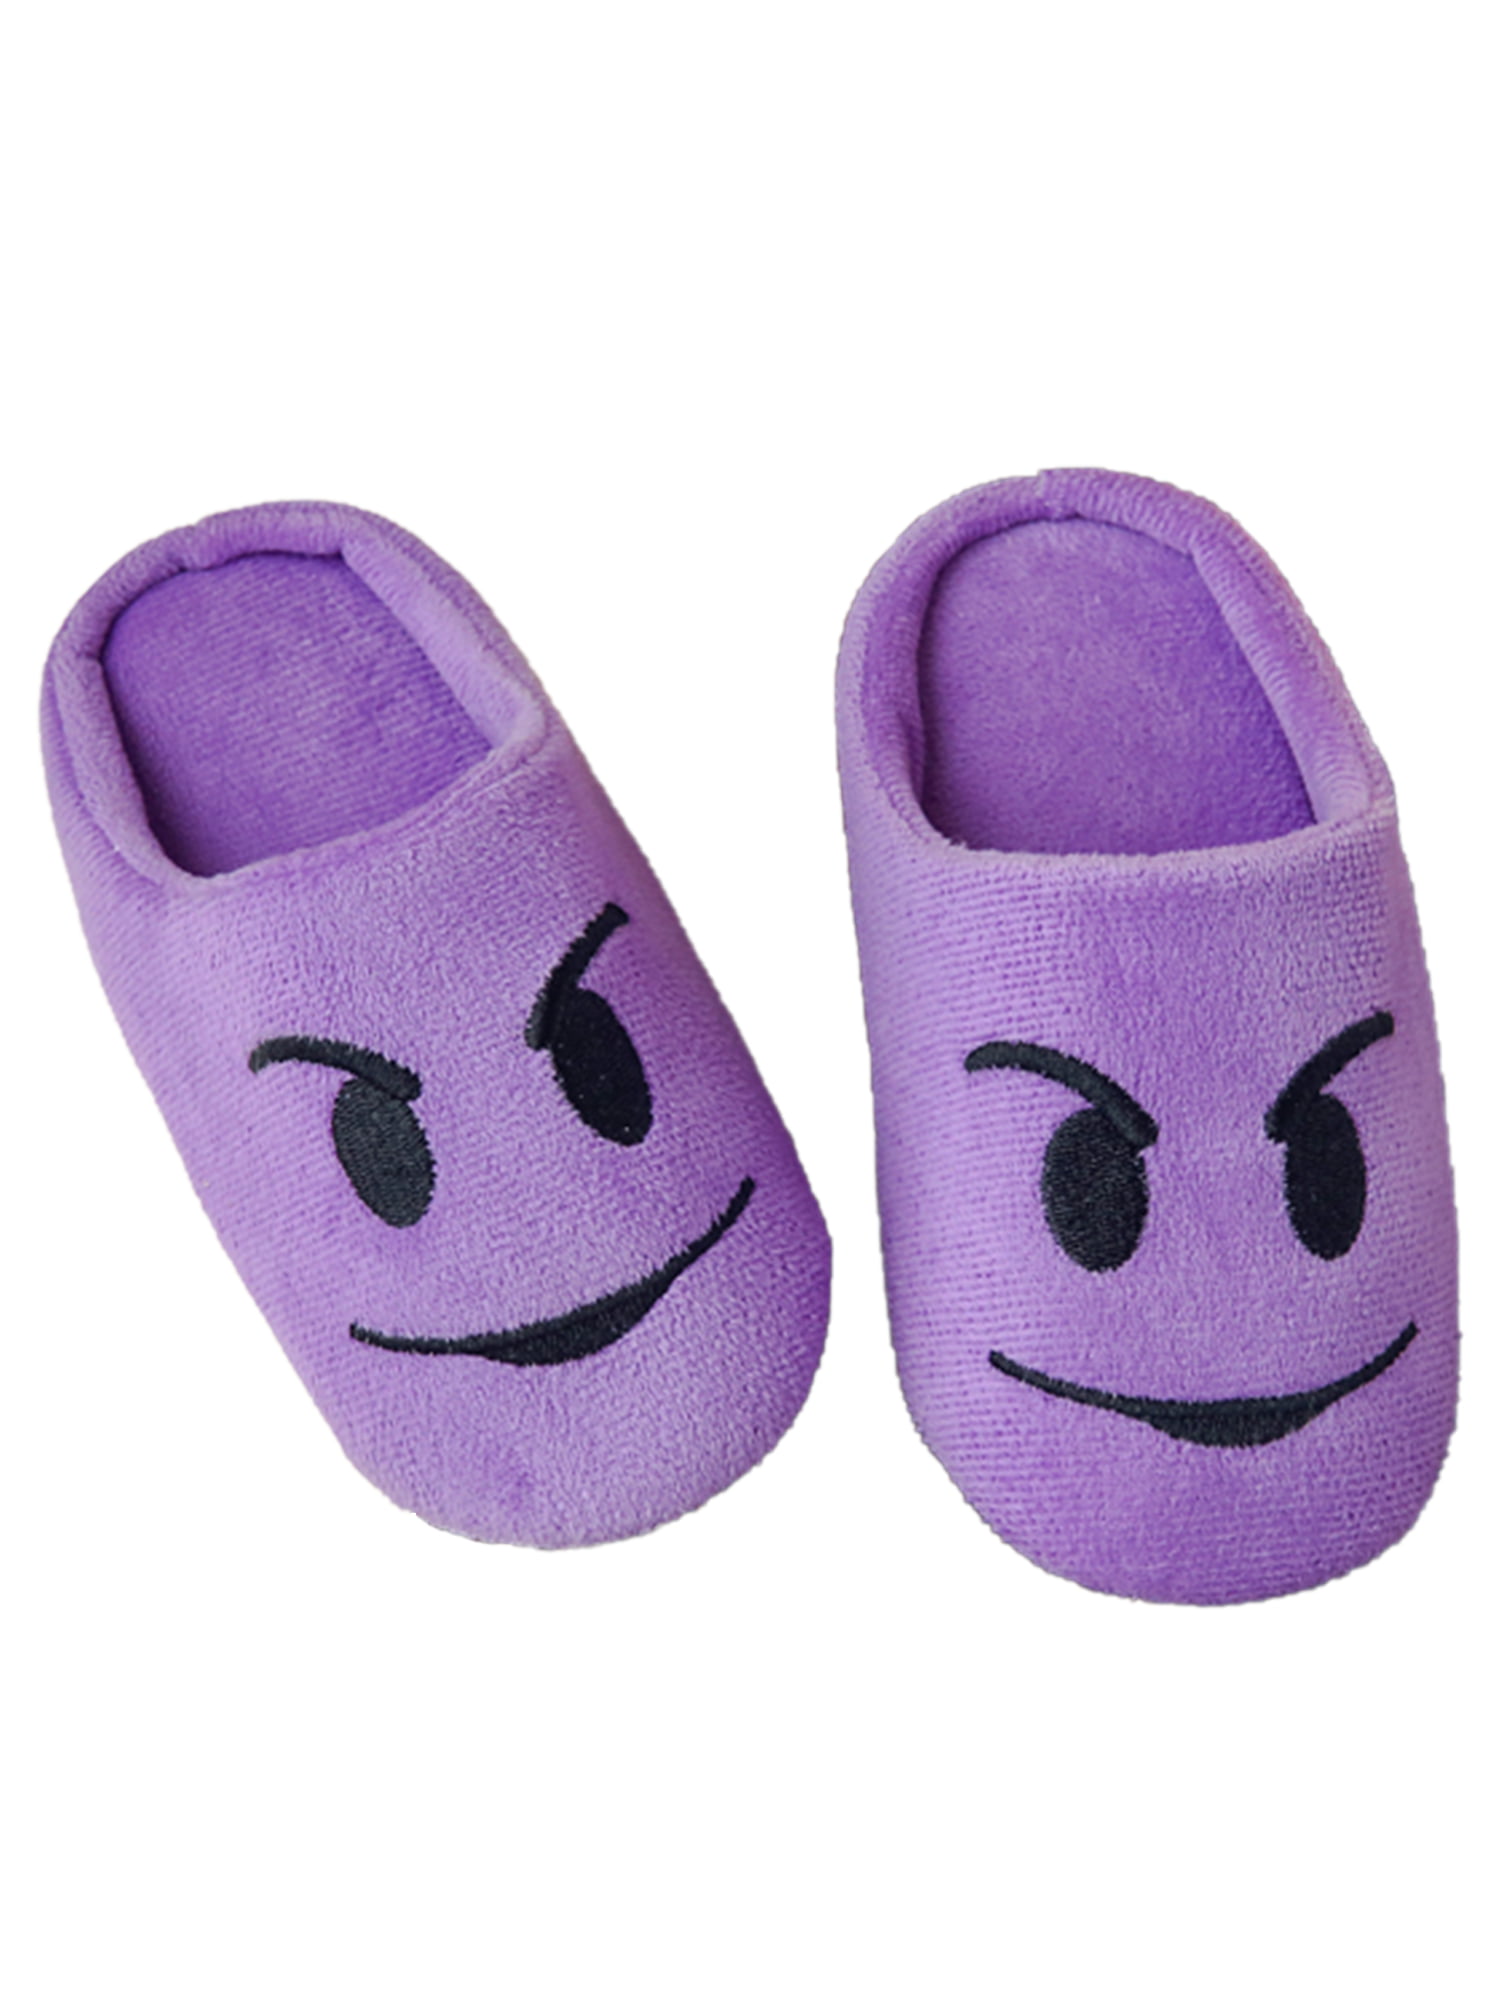 emoji shoes walmart